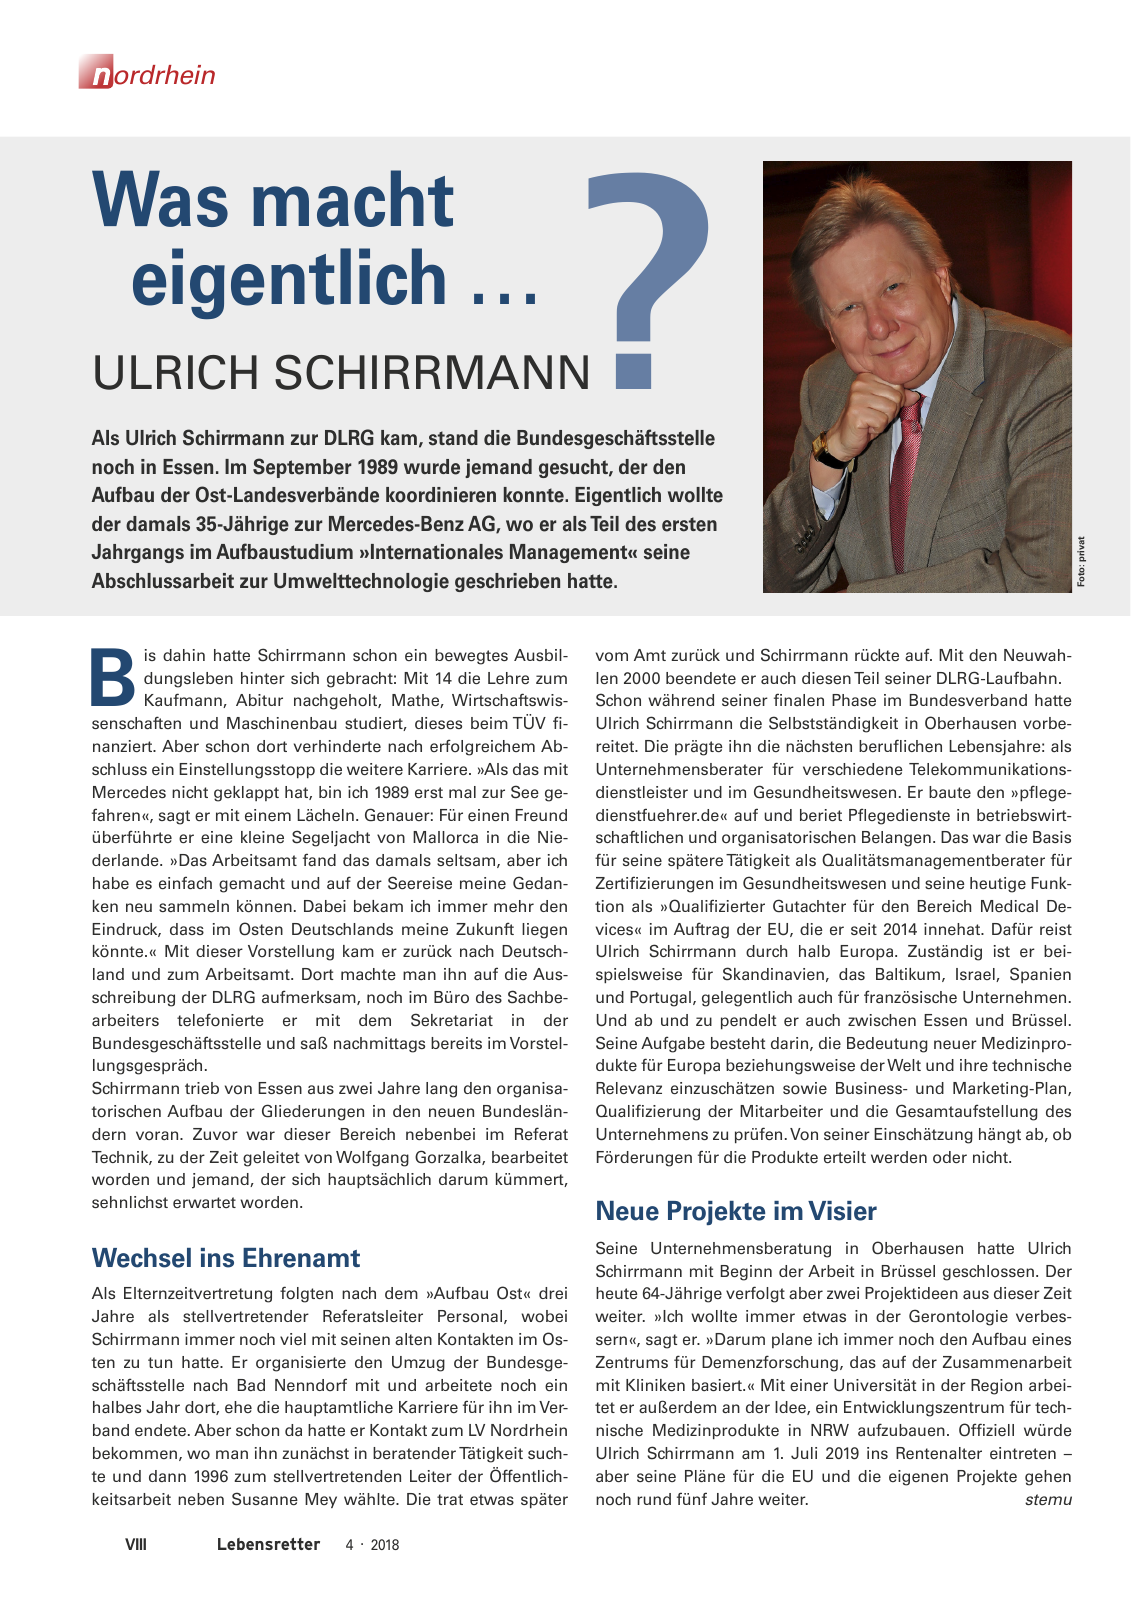 Vorschau Lebensretter 4/2018 - Regionalausgabe Nordrhein Seite 10